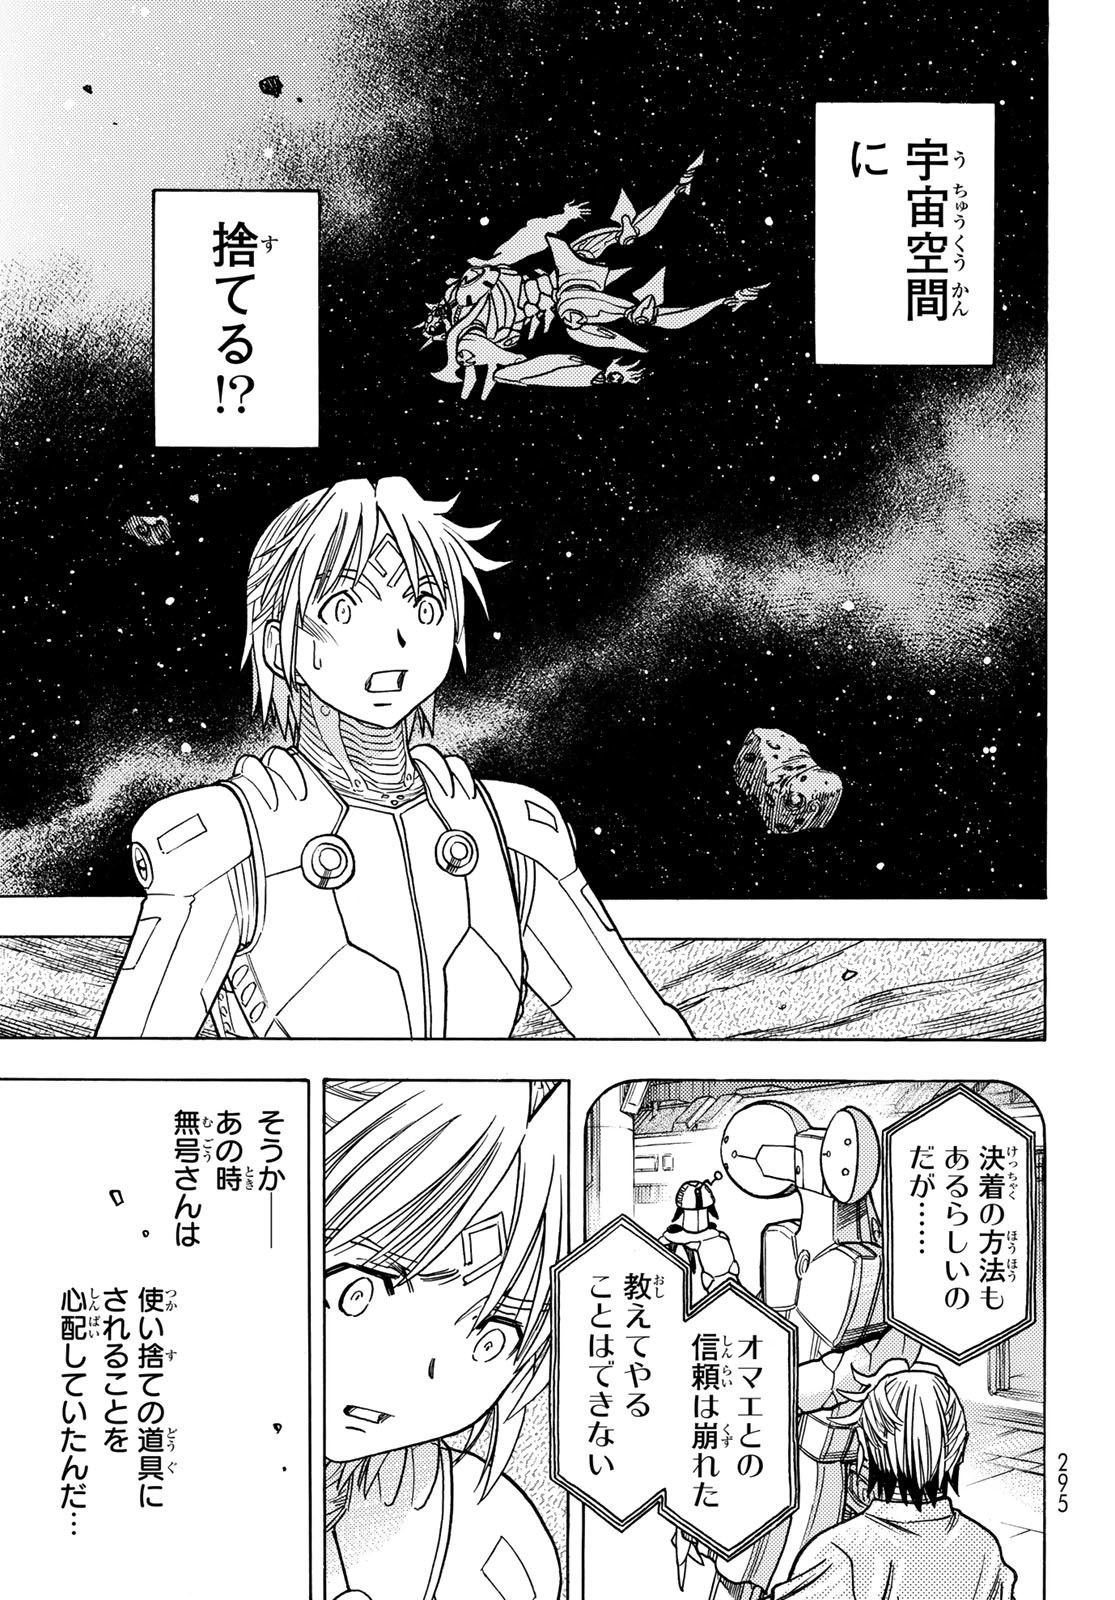 Mugou no Schnell Gear: Chikyuugai Kisouka AI - Chapter 51 - Page 11